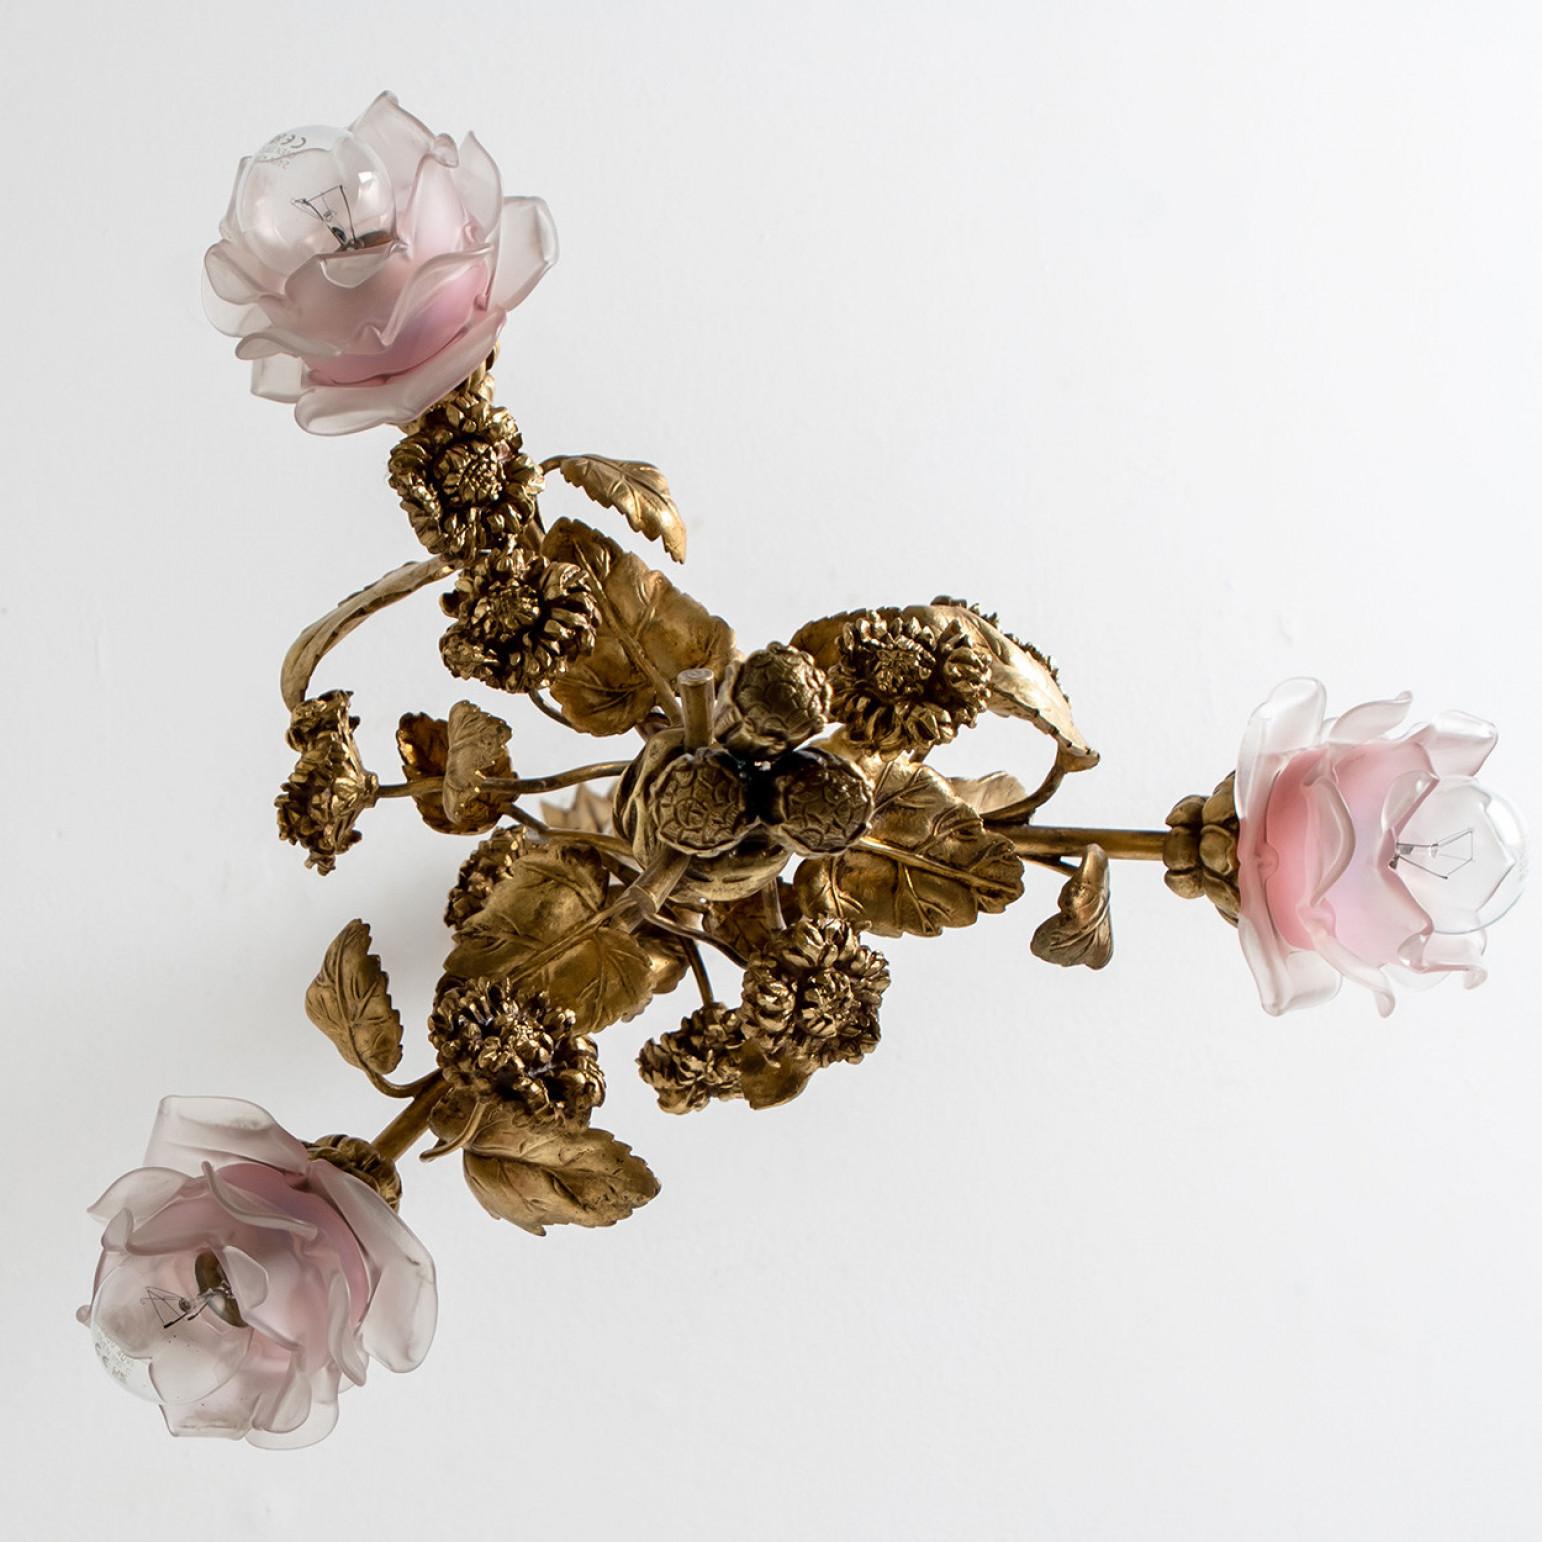 Exceptionnel et élégant lustre en bronze doré et verre, période Art nouveau, France, vers 1890.

Avec 3 magnifiques roses en verre avec baïonnette et un bouquet de fleurs en bronze fait à la main.

Une véritable pièce d'art du 19e siècle.

En très